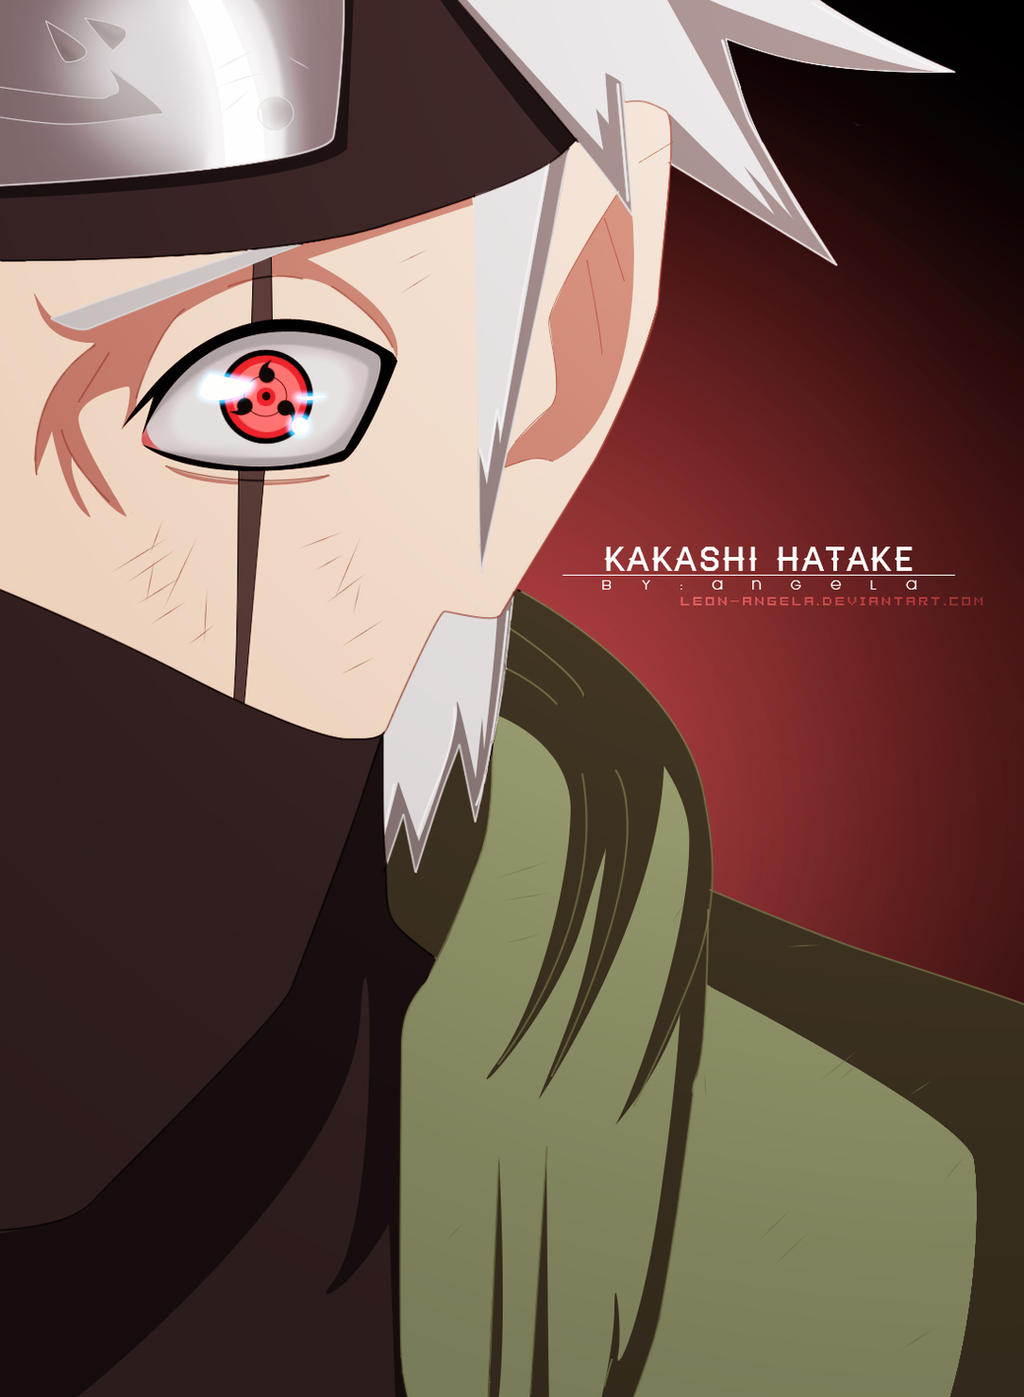 Naruto e Kakashi - Kakashi colorido by ADMUlielson on DeviantArt